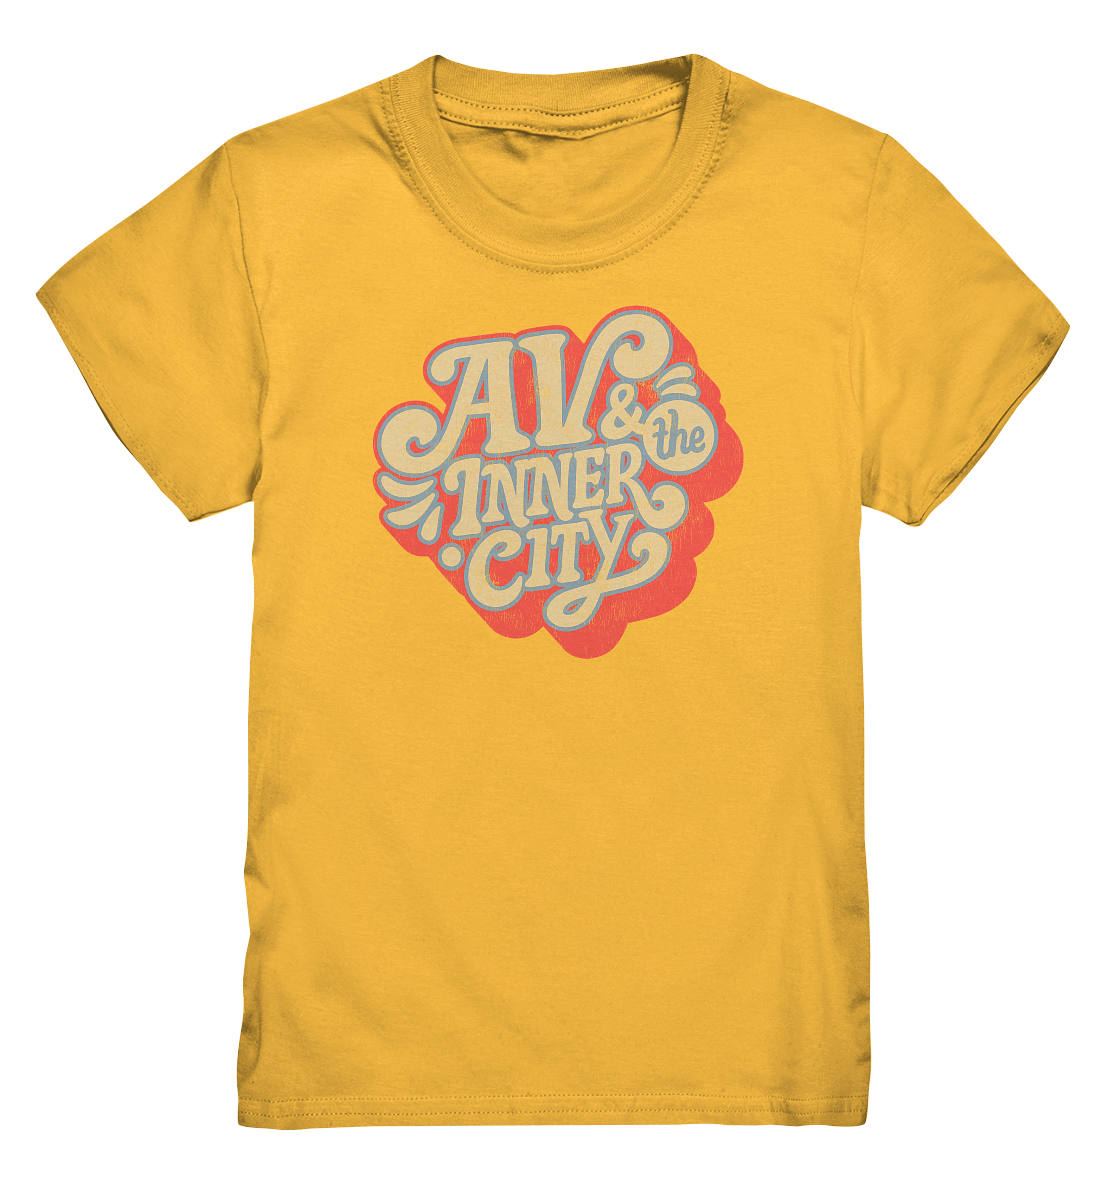 AV & the Inner City / Kids' Premium T-Shirt - Orange and Yellow Logo